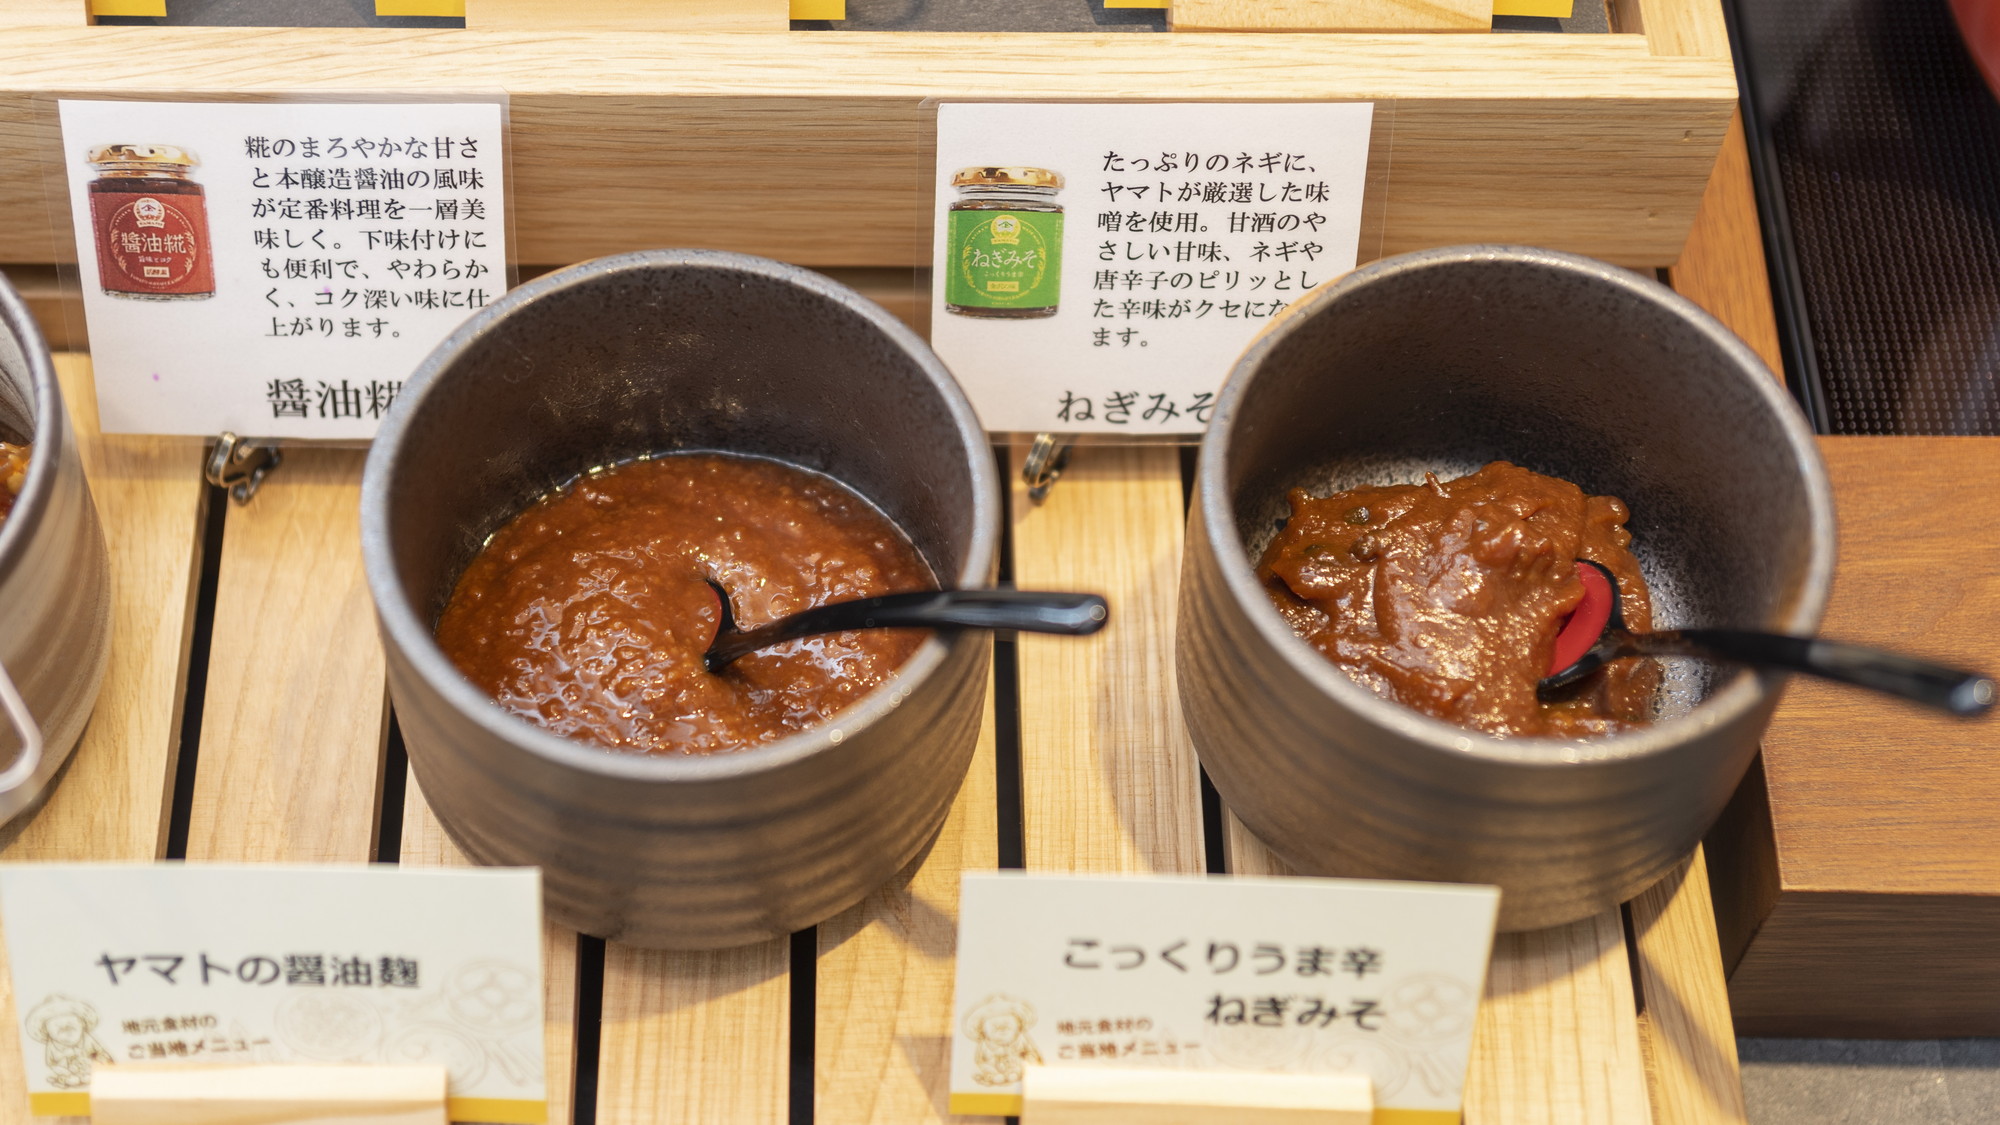 石川県産のお味噌はご飯と一緒にお召し上がりください